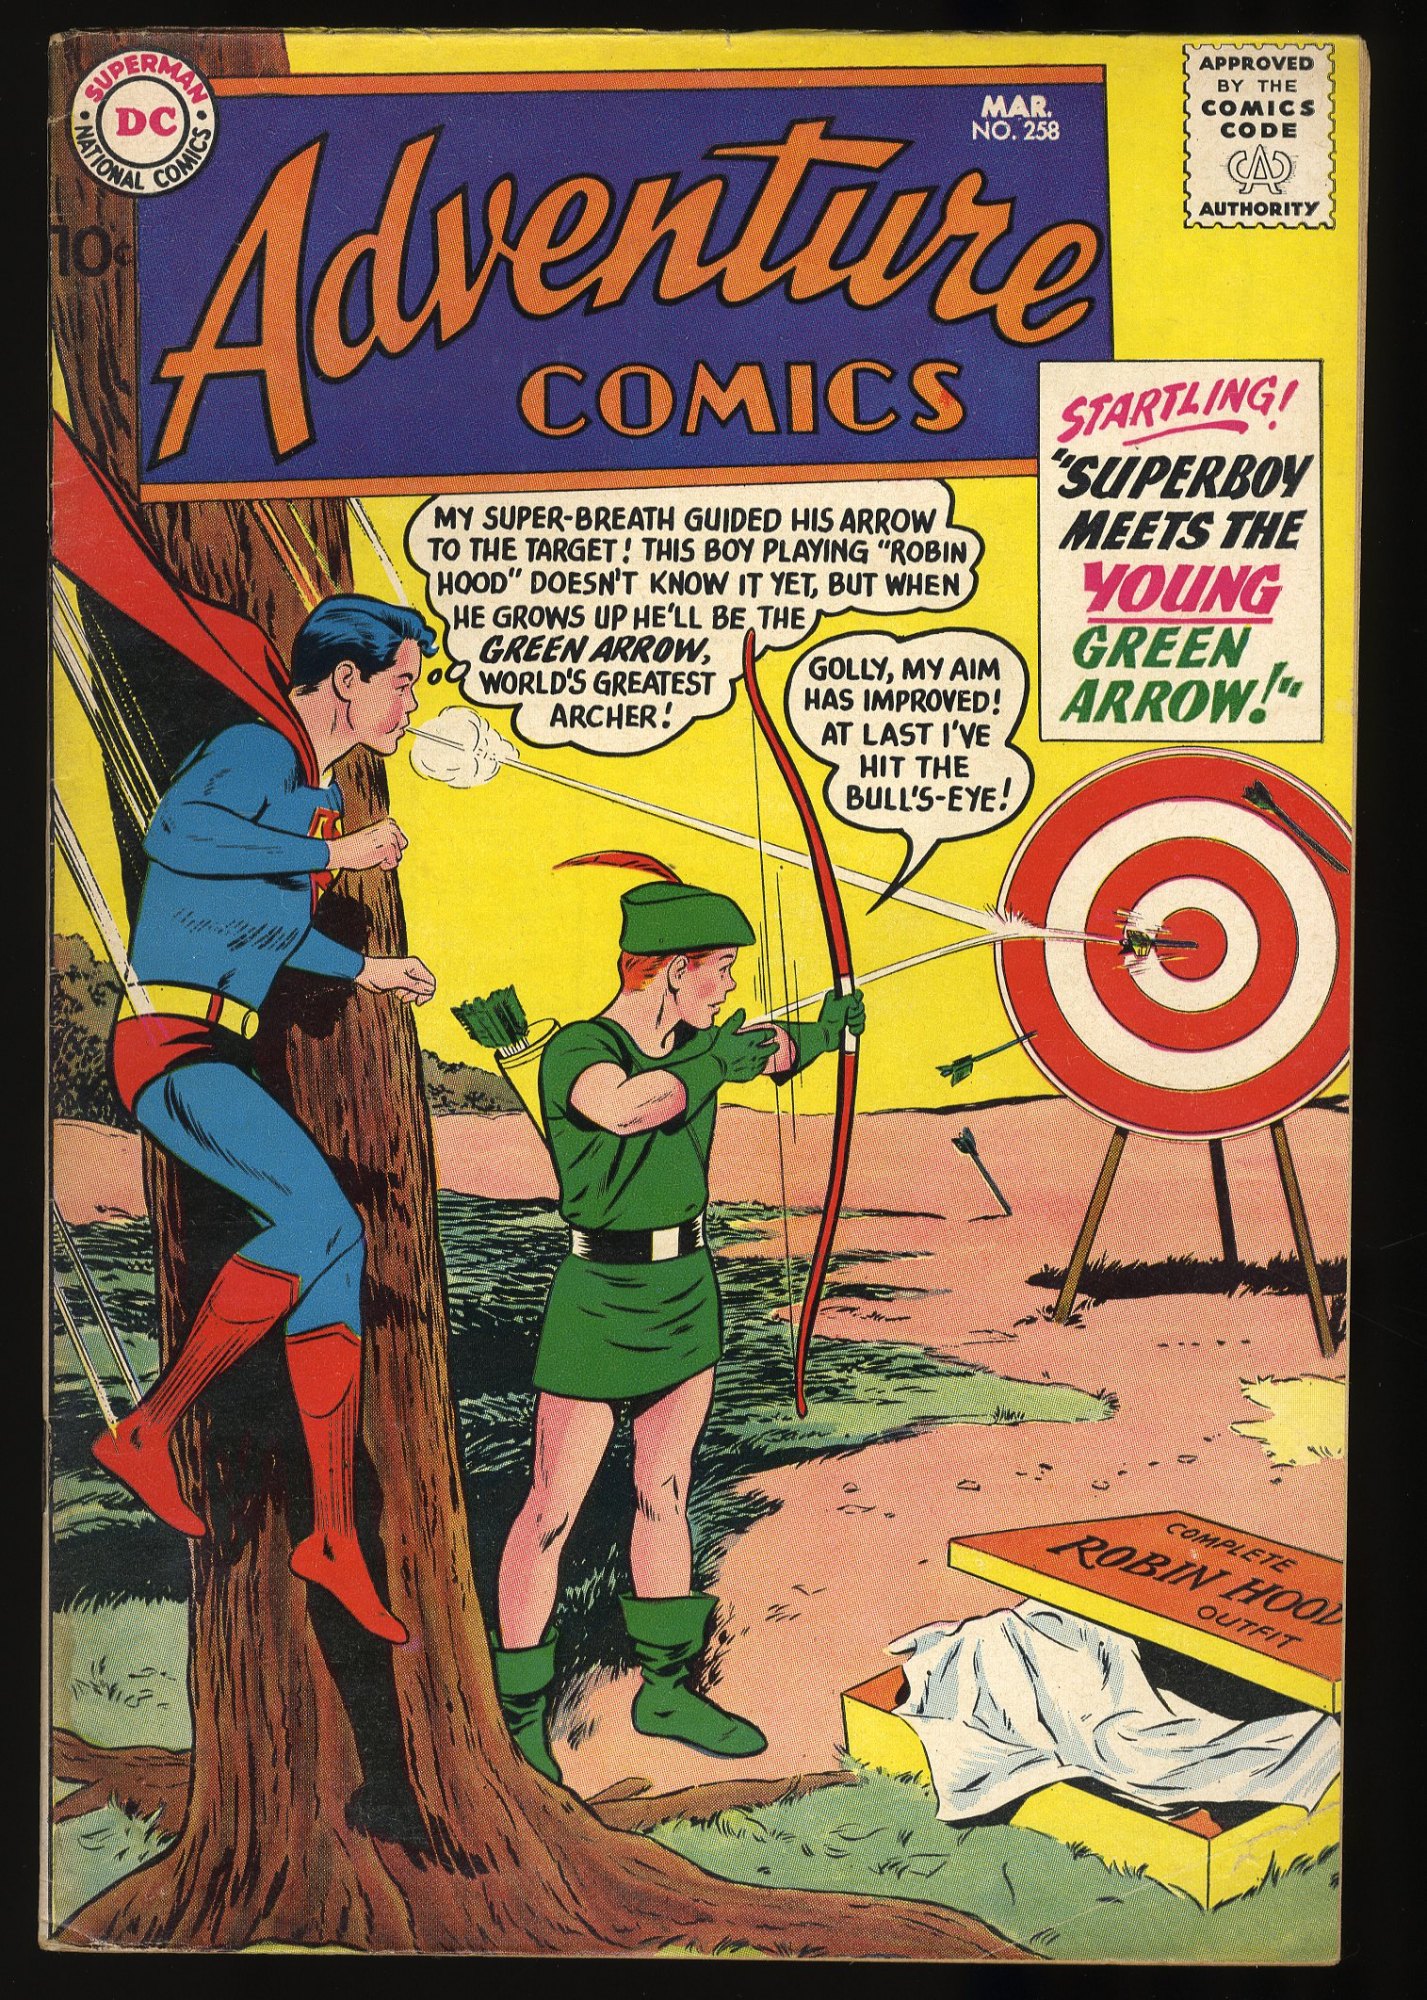 Image: Adventure Comics #258 VG+ 4.5 Superboy meets Green Arrow!